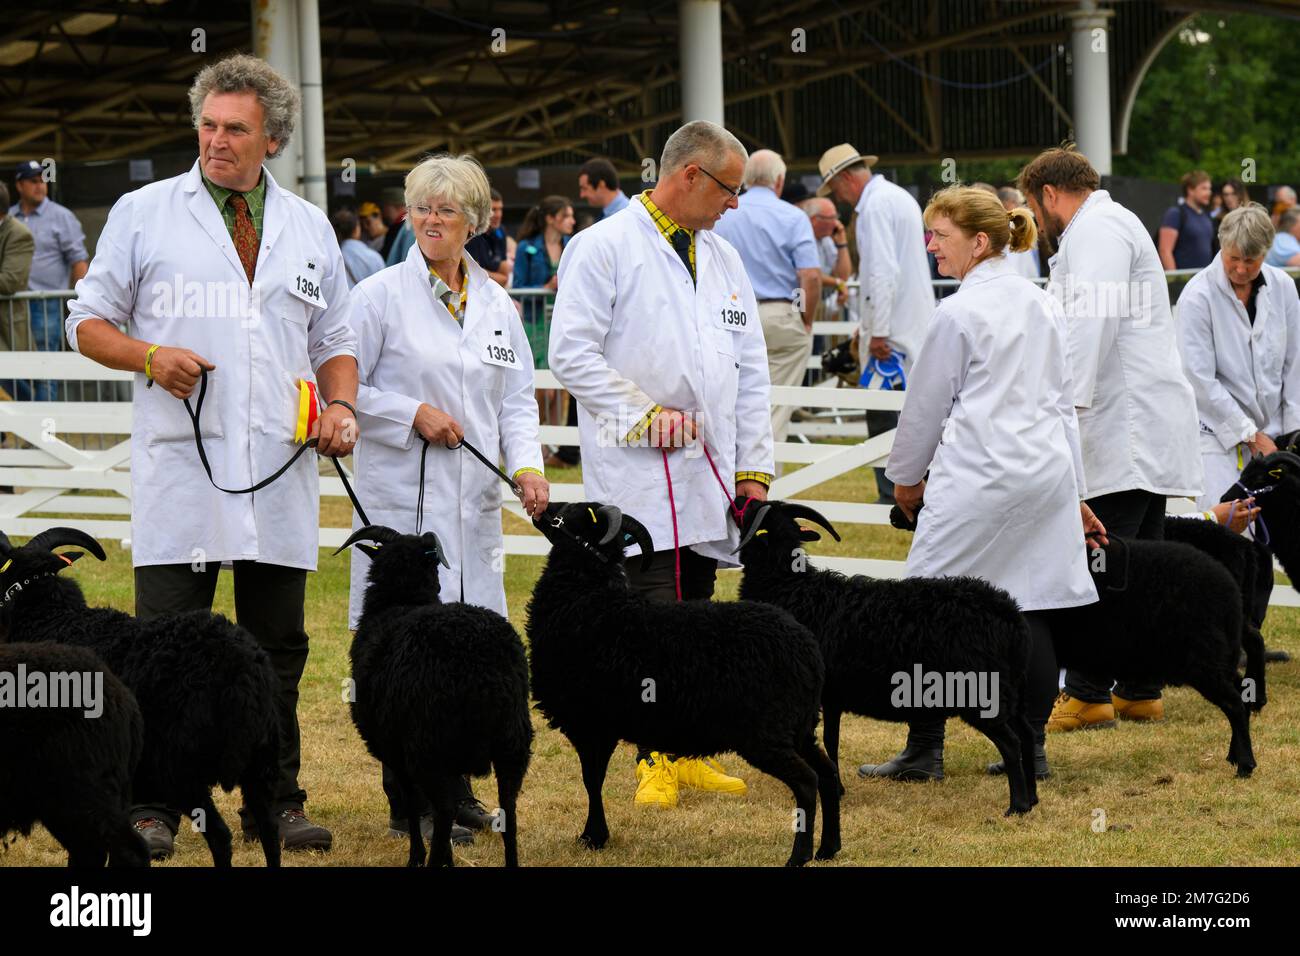 Les moutons hébridiens (polaires noirs, cornes, brebis) se tiennent avec les agriculteurs (hommes femmes) en ligne pour le jugement - The Great Yorkshire Show, Harrogate Angleterre Royaume-Uni. Banque D'Images